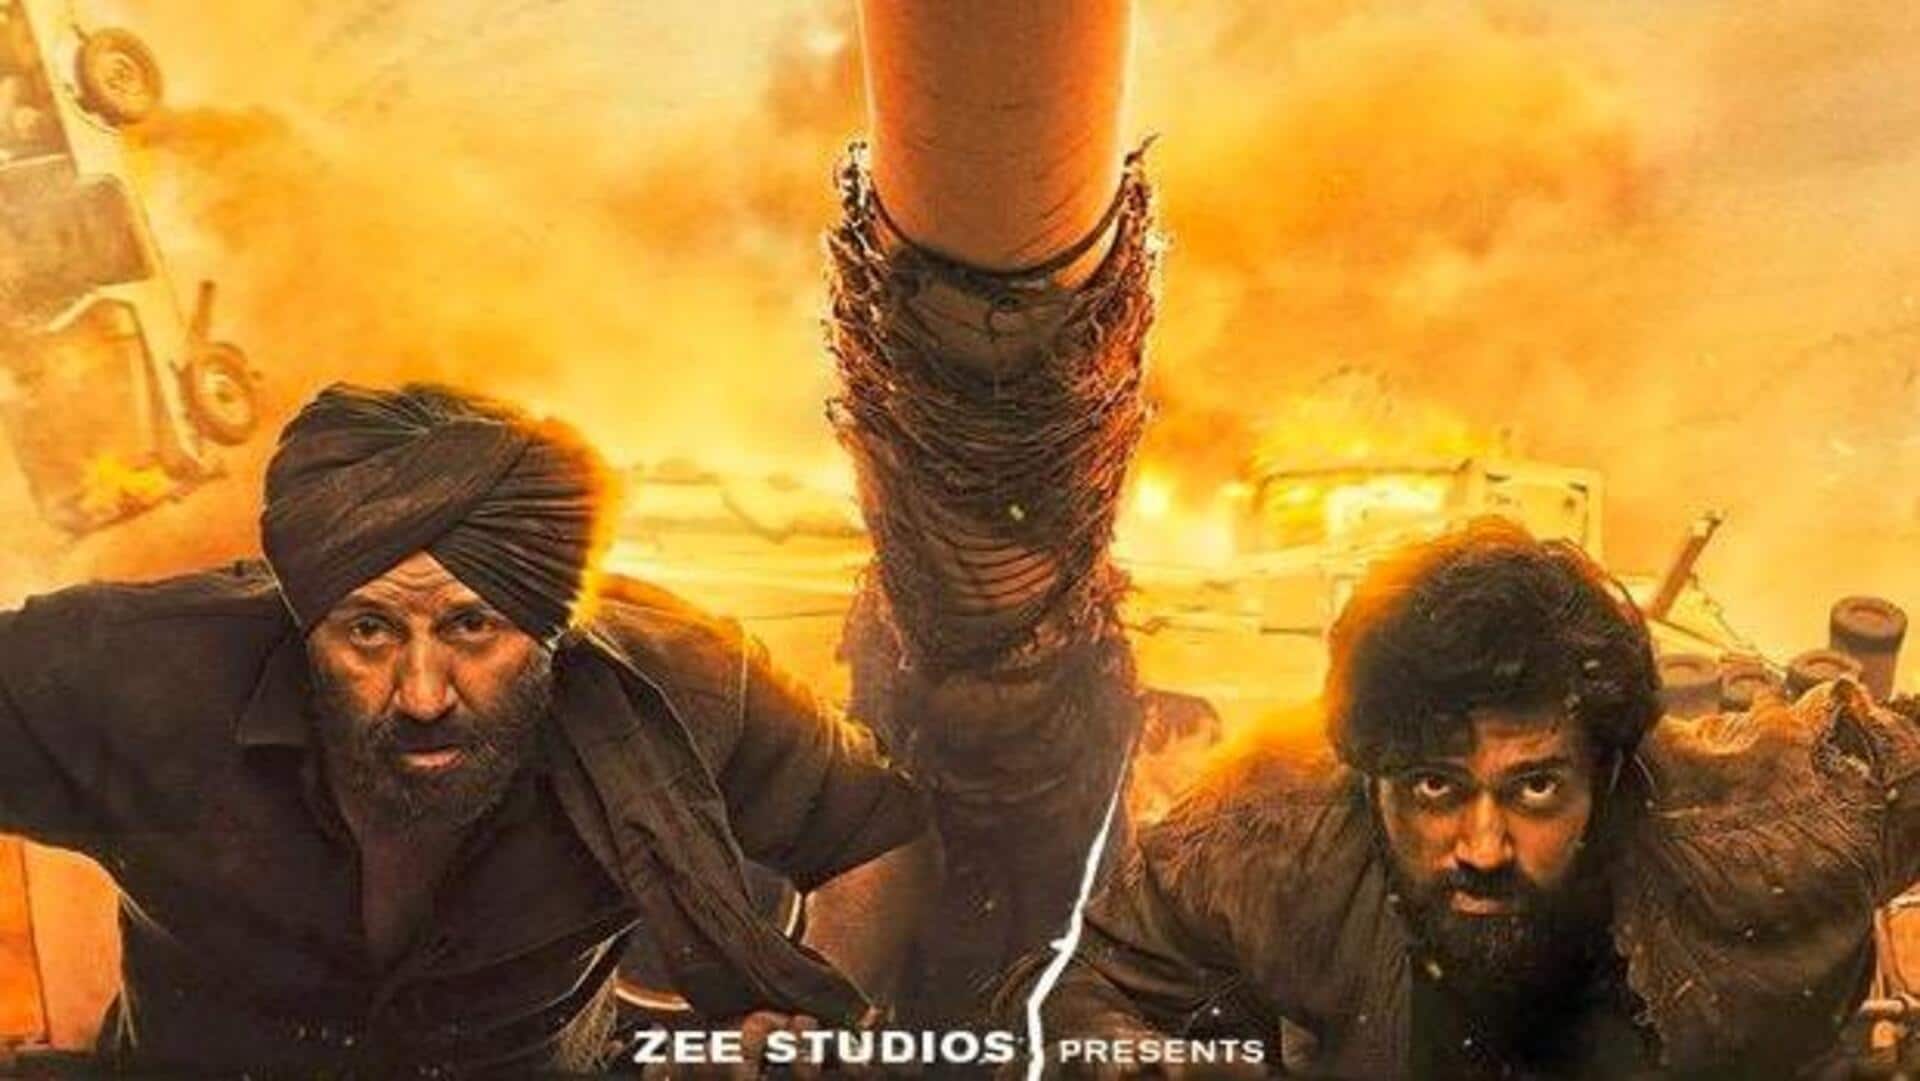 सनी देओल की 'गदर 2' का नया पोस्टर रिलीज, जानिए कब सिनेमाघरों में दस्तक देगी फिल्म 